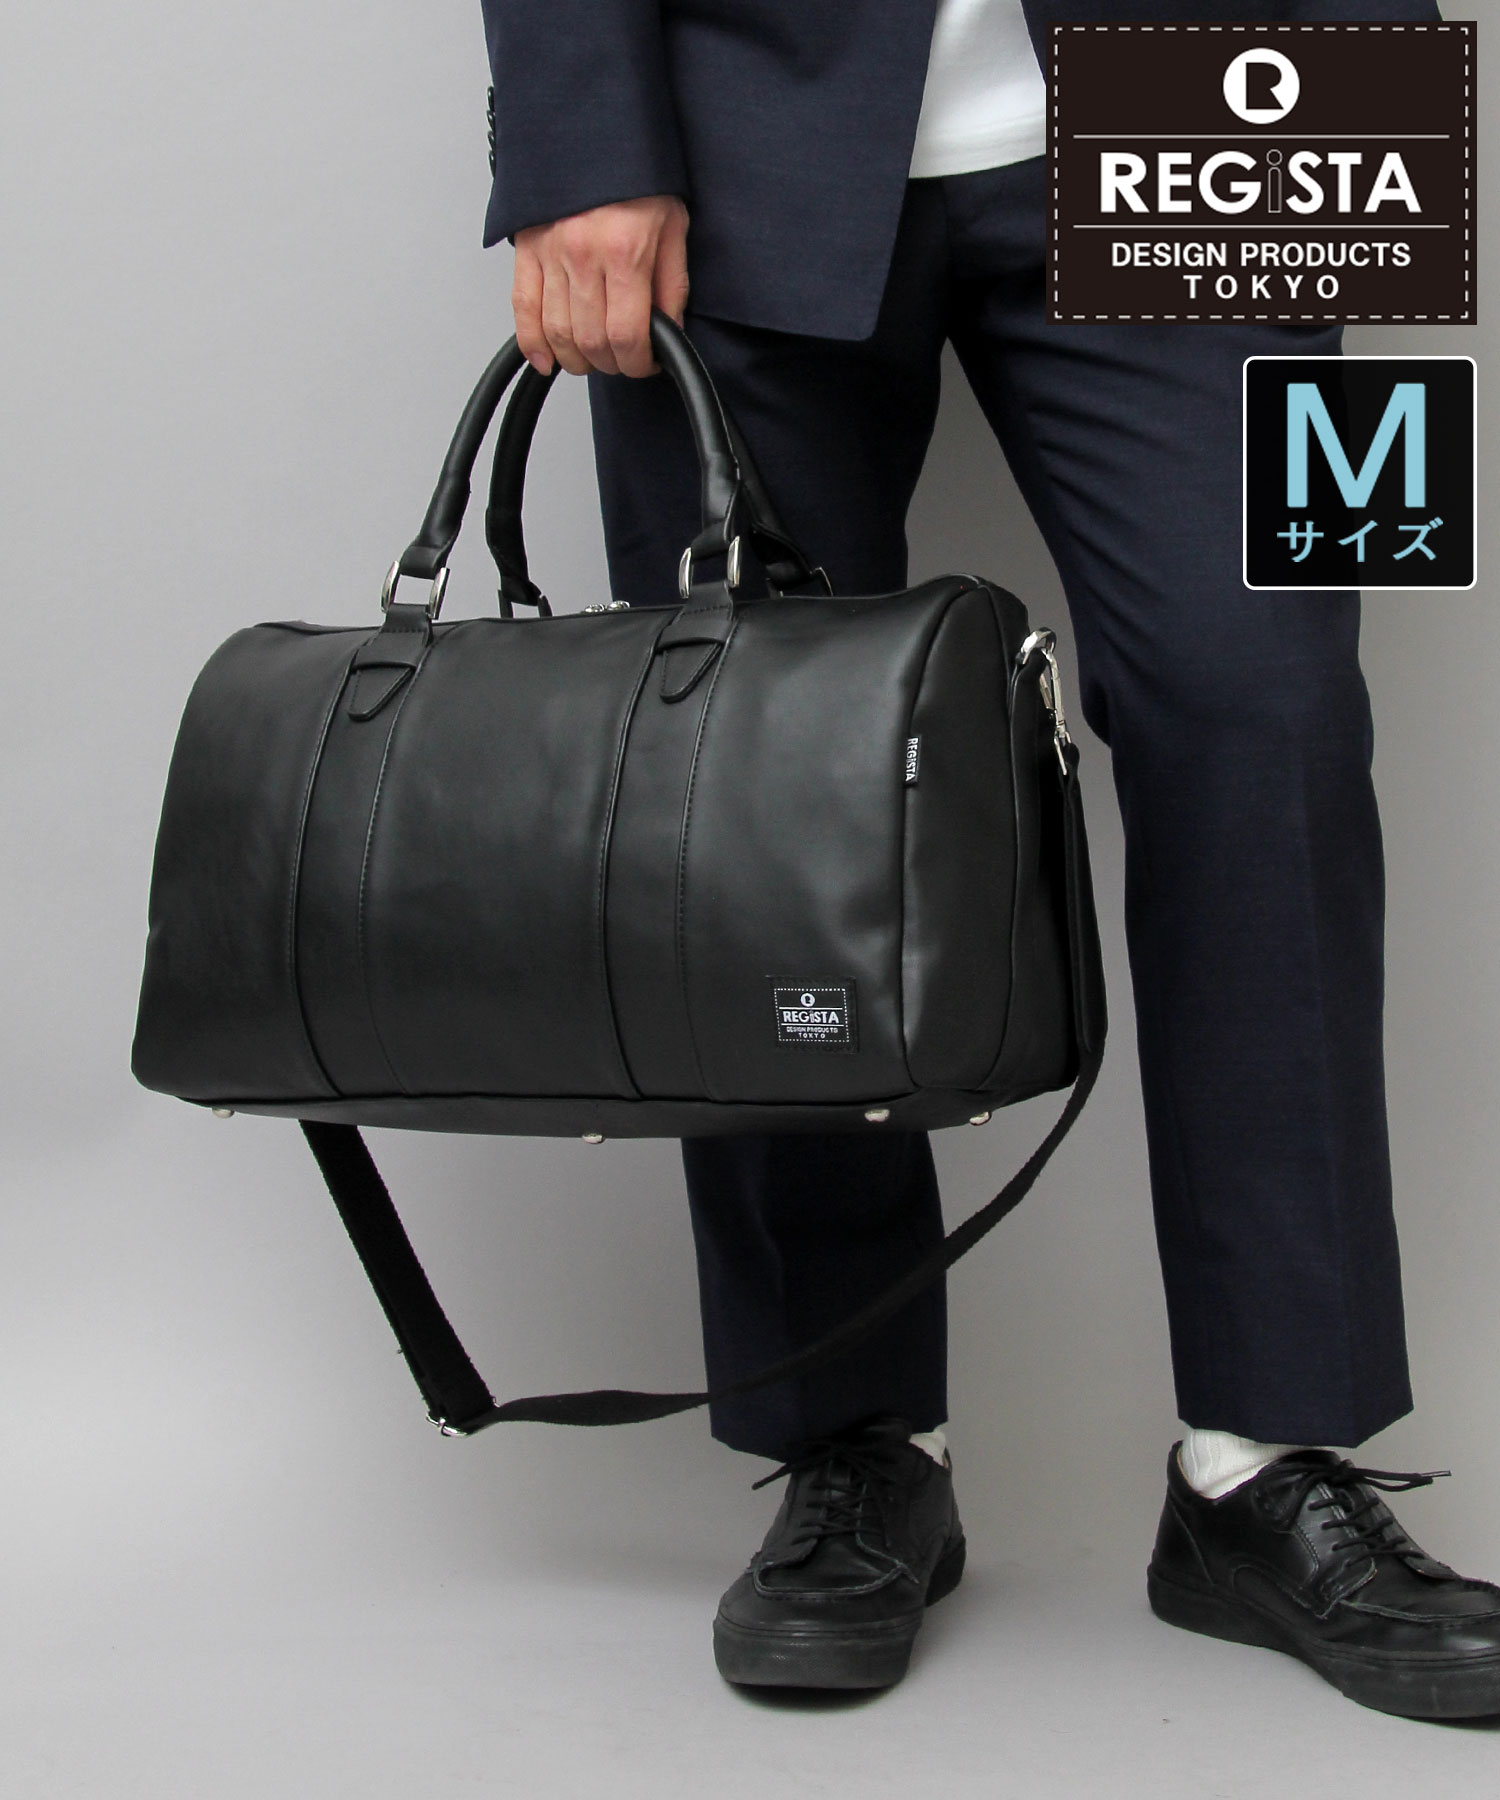 REGiSTA / レジスタ / フェイクレザーボストンバッグ / 旅行バッグ / 小さめ / 小旅行バッグ